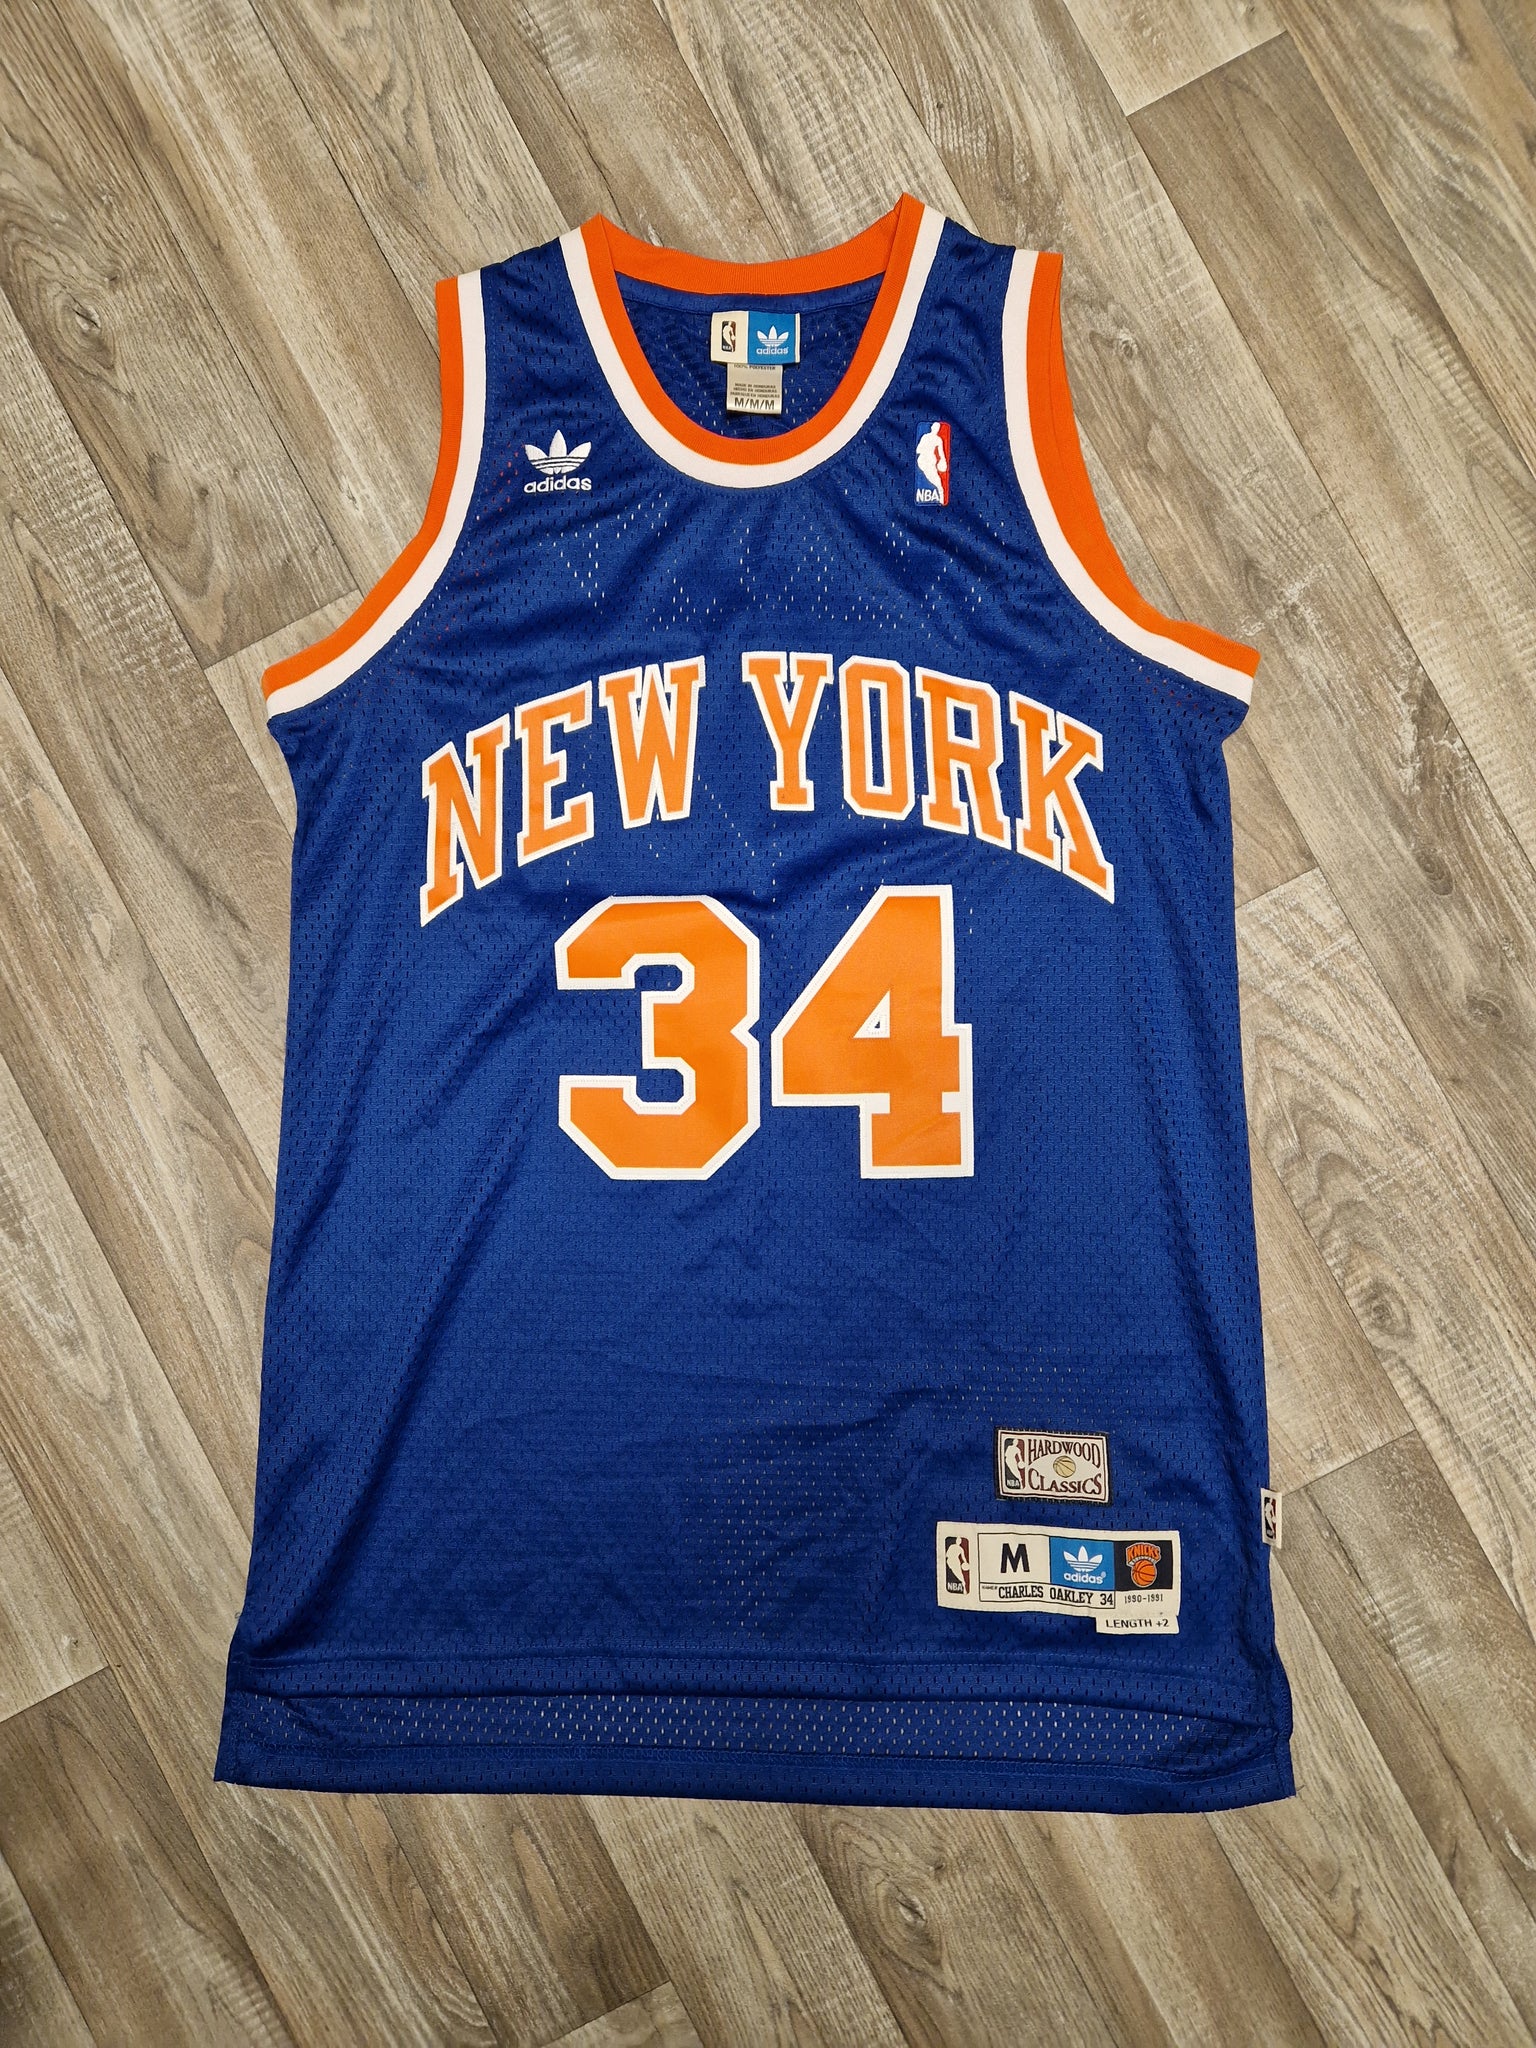 Derrick Rose New York Knicks Adidas Swingman NBA Jersey Mens Sz Medium M